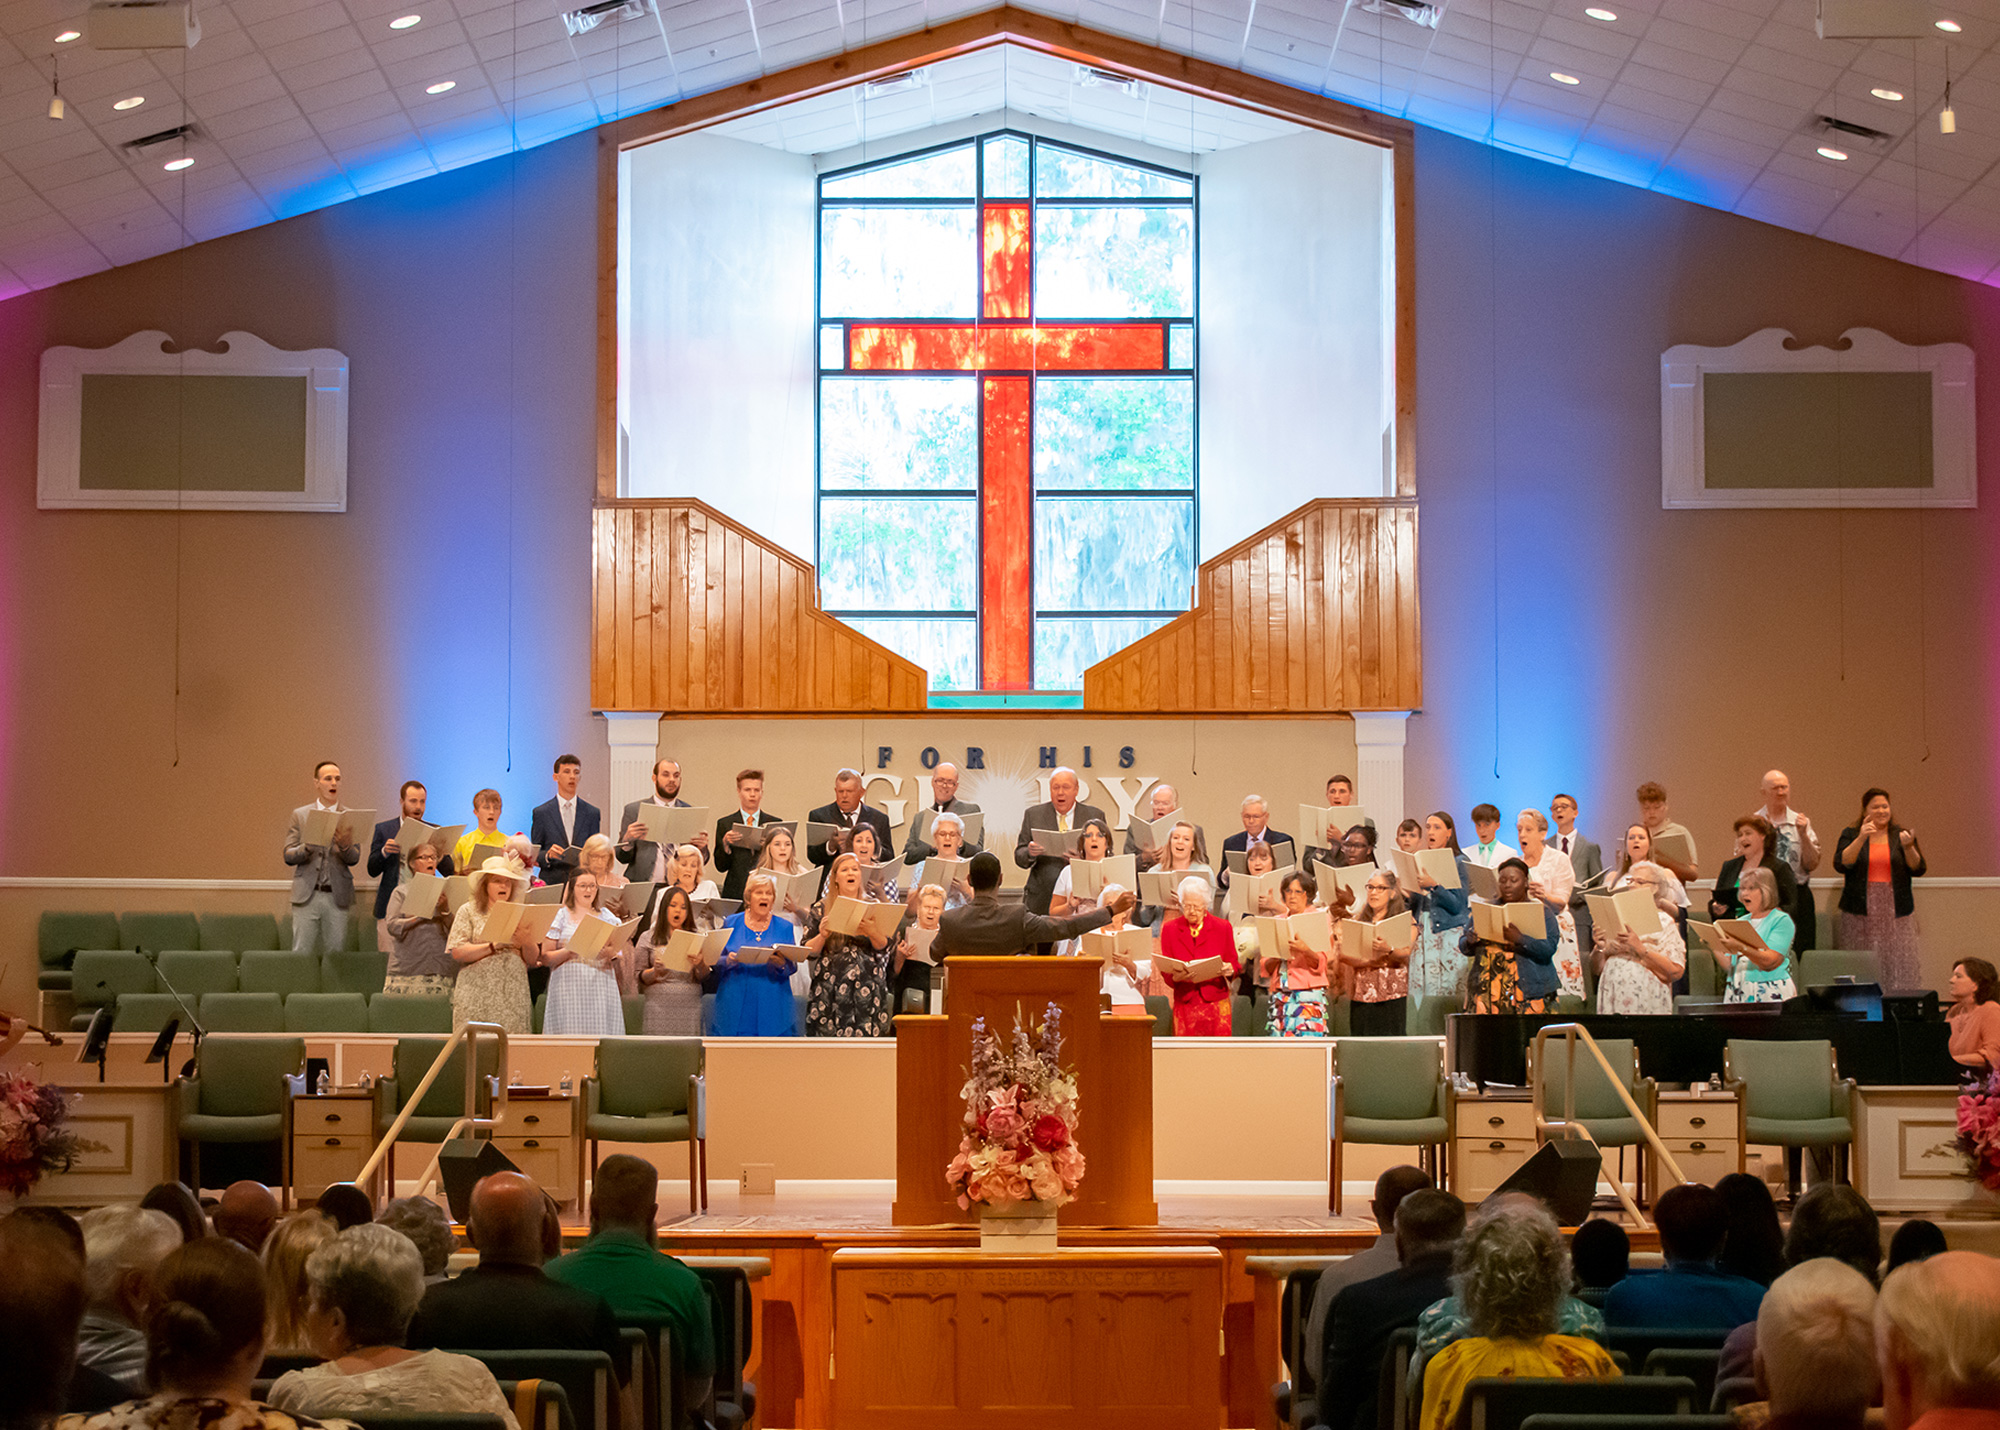 Choir singing in a church service